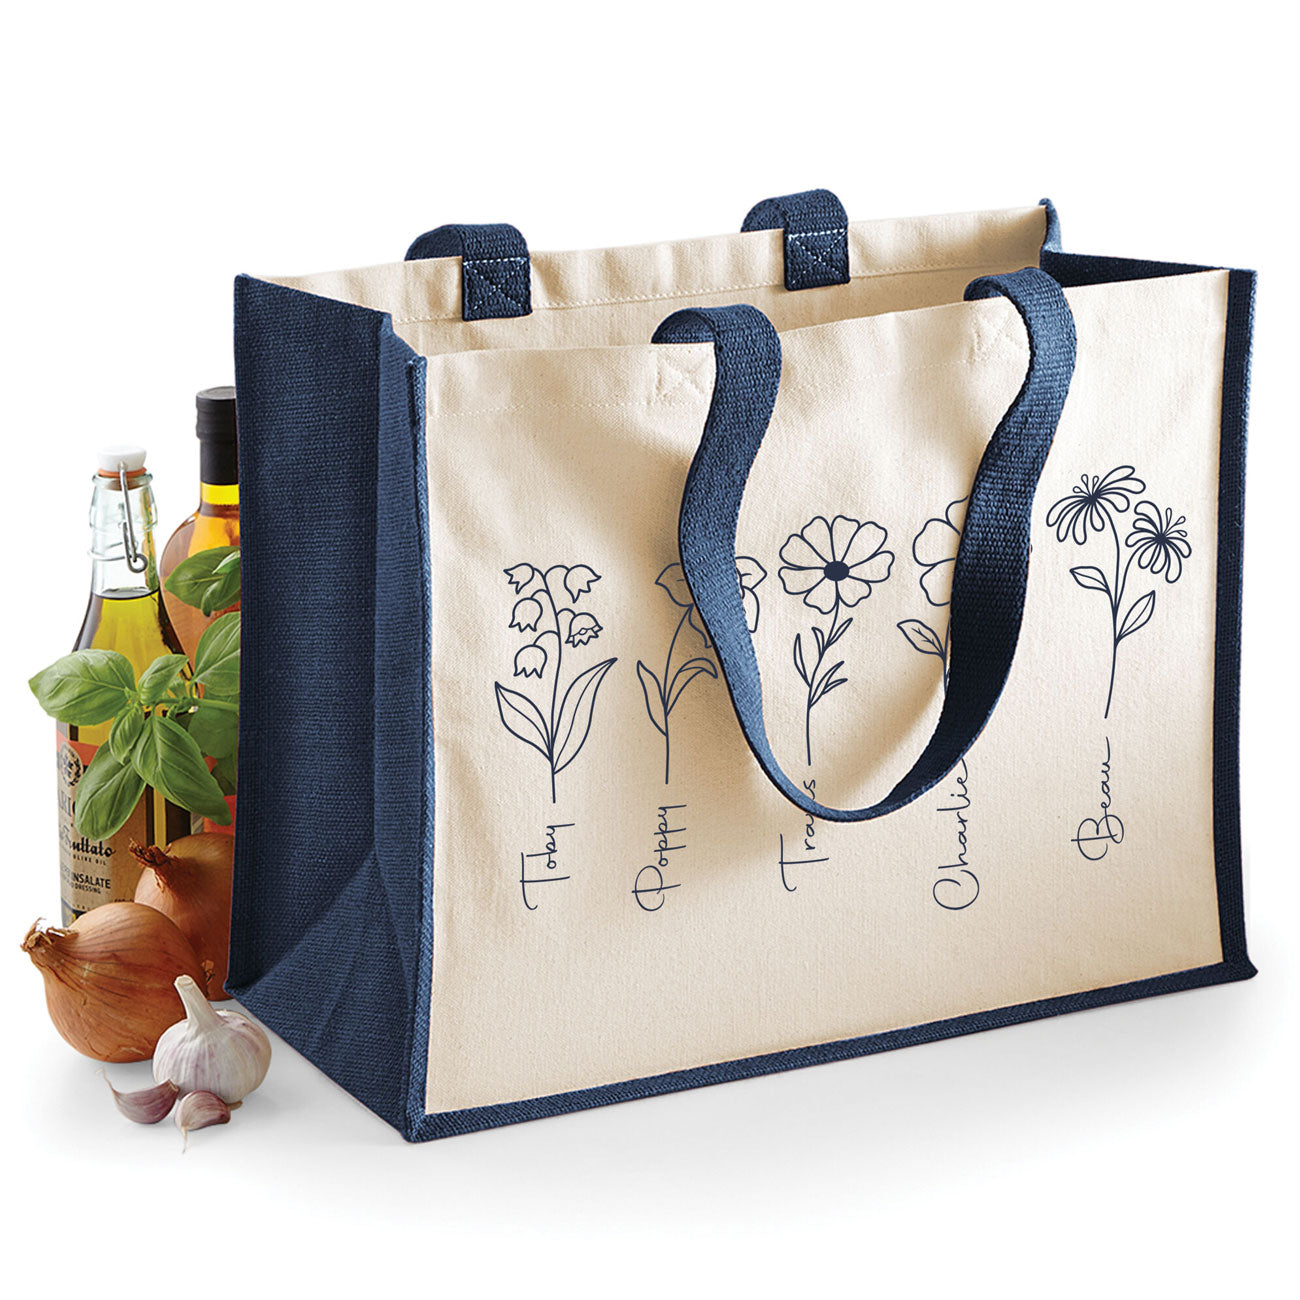 Grandma's Garden Tote Bag, Personalised Gift For Nan